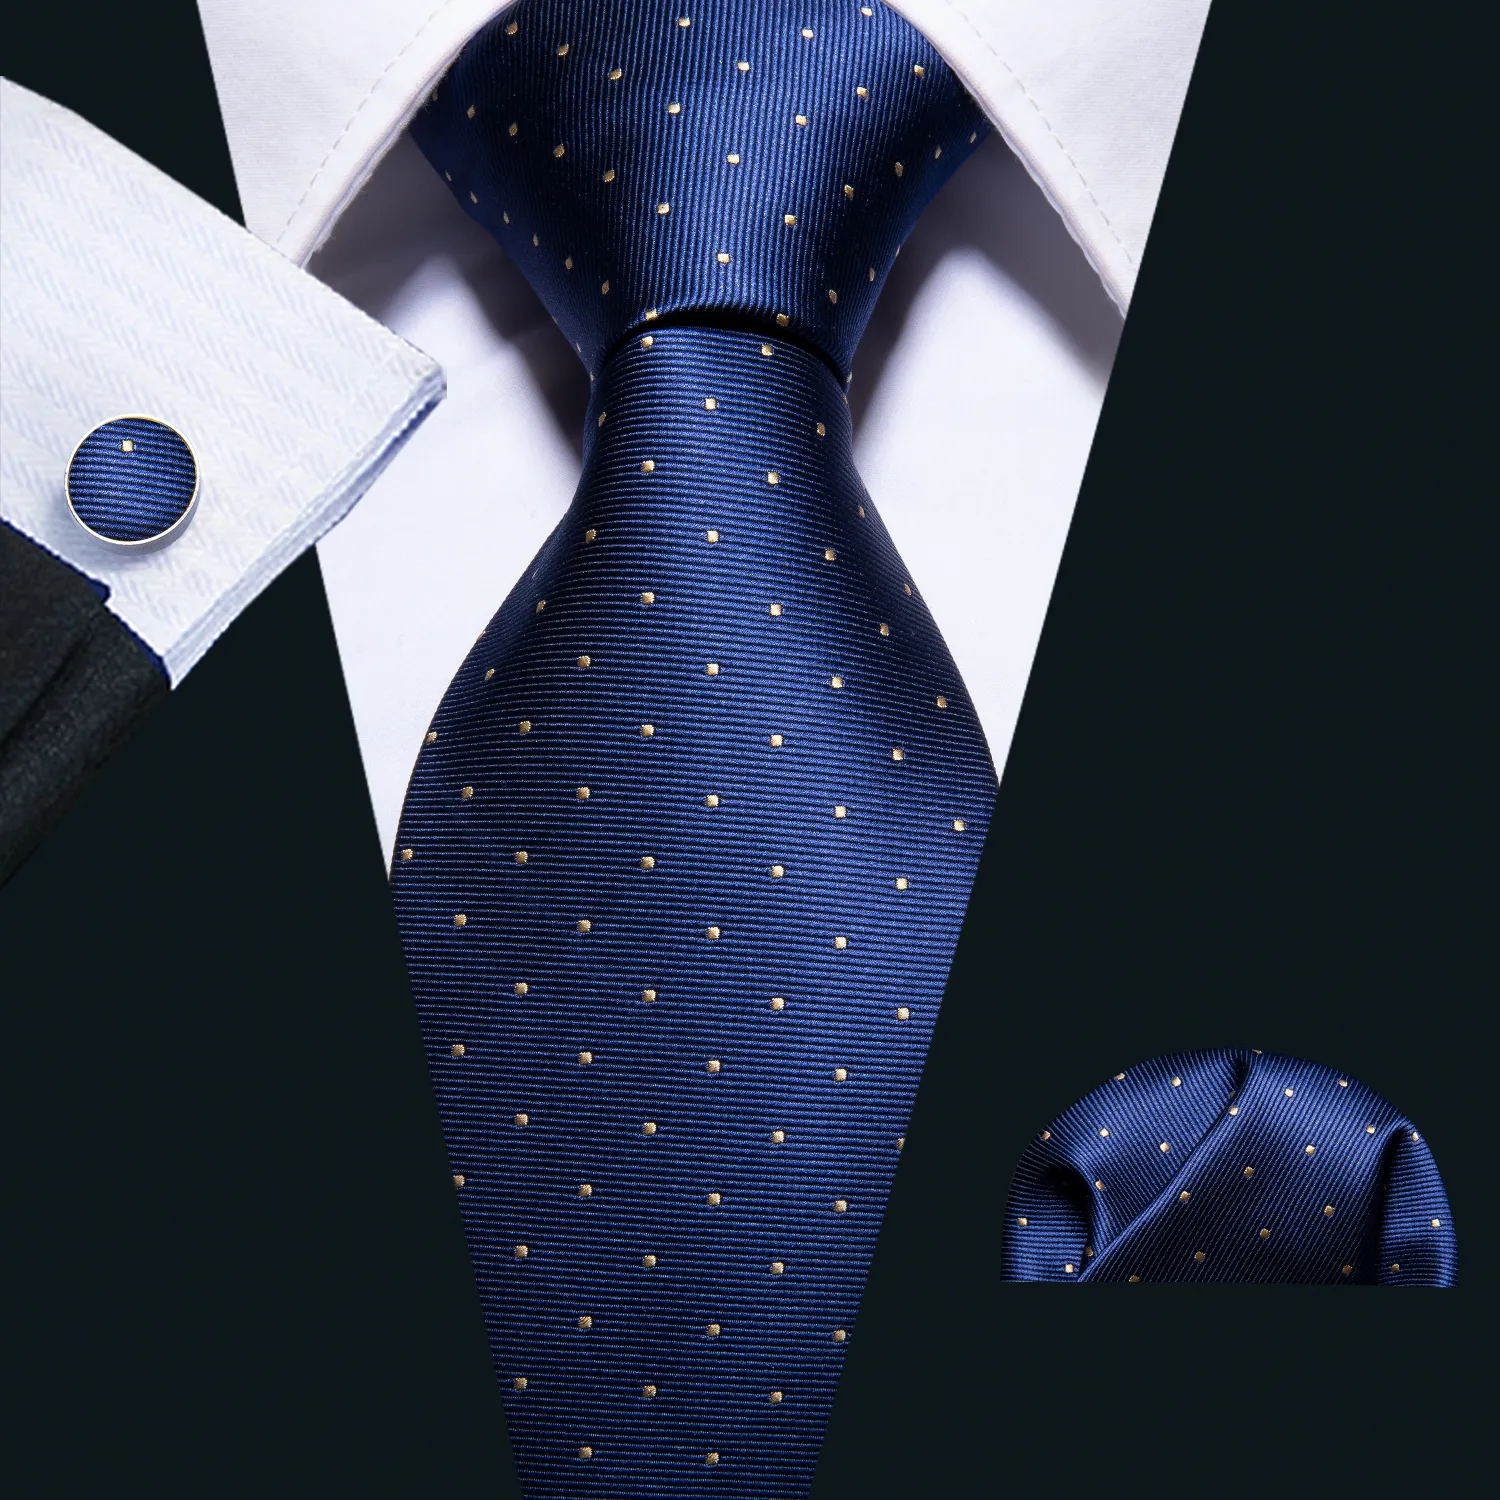 Envío rápido para hombre del pañuelo azul corbata Gemelos nueva manera del diseño de seda amarilla del punto de corbatas Para Hombres Busines N-5095